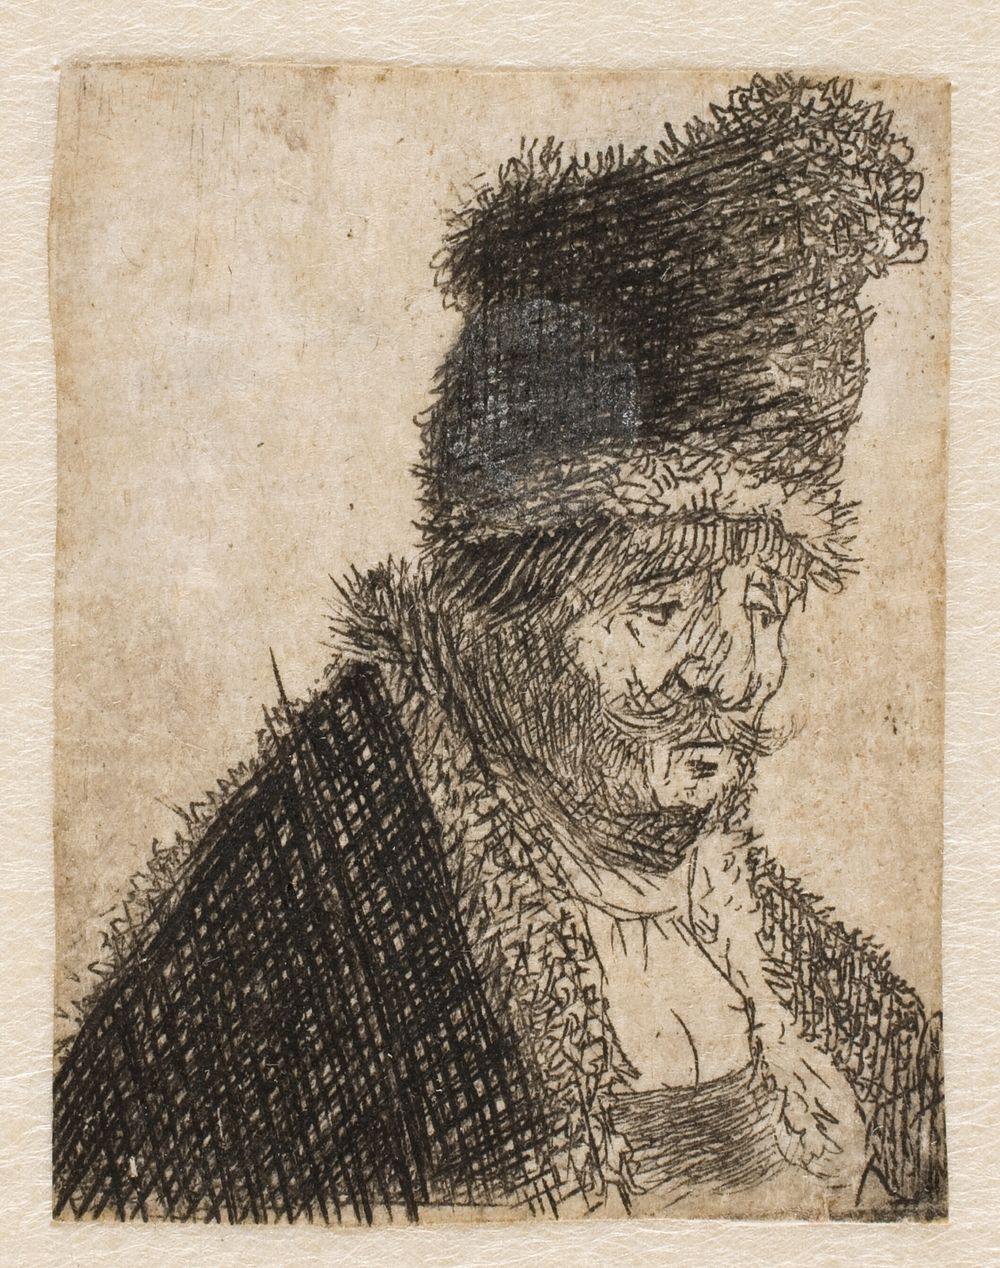 Head of old man with fur hat by Rembrandt van Rijn